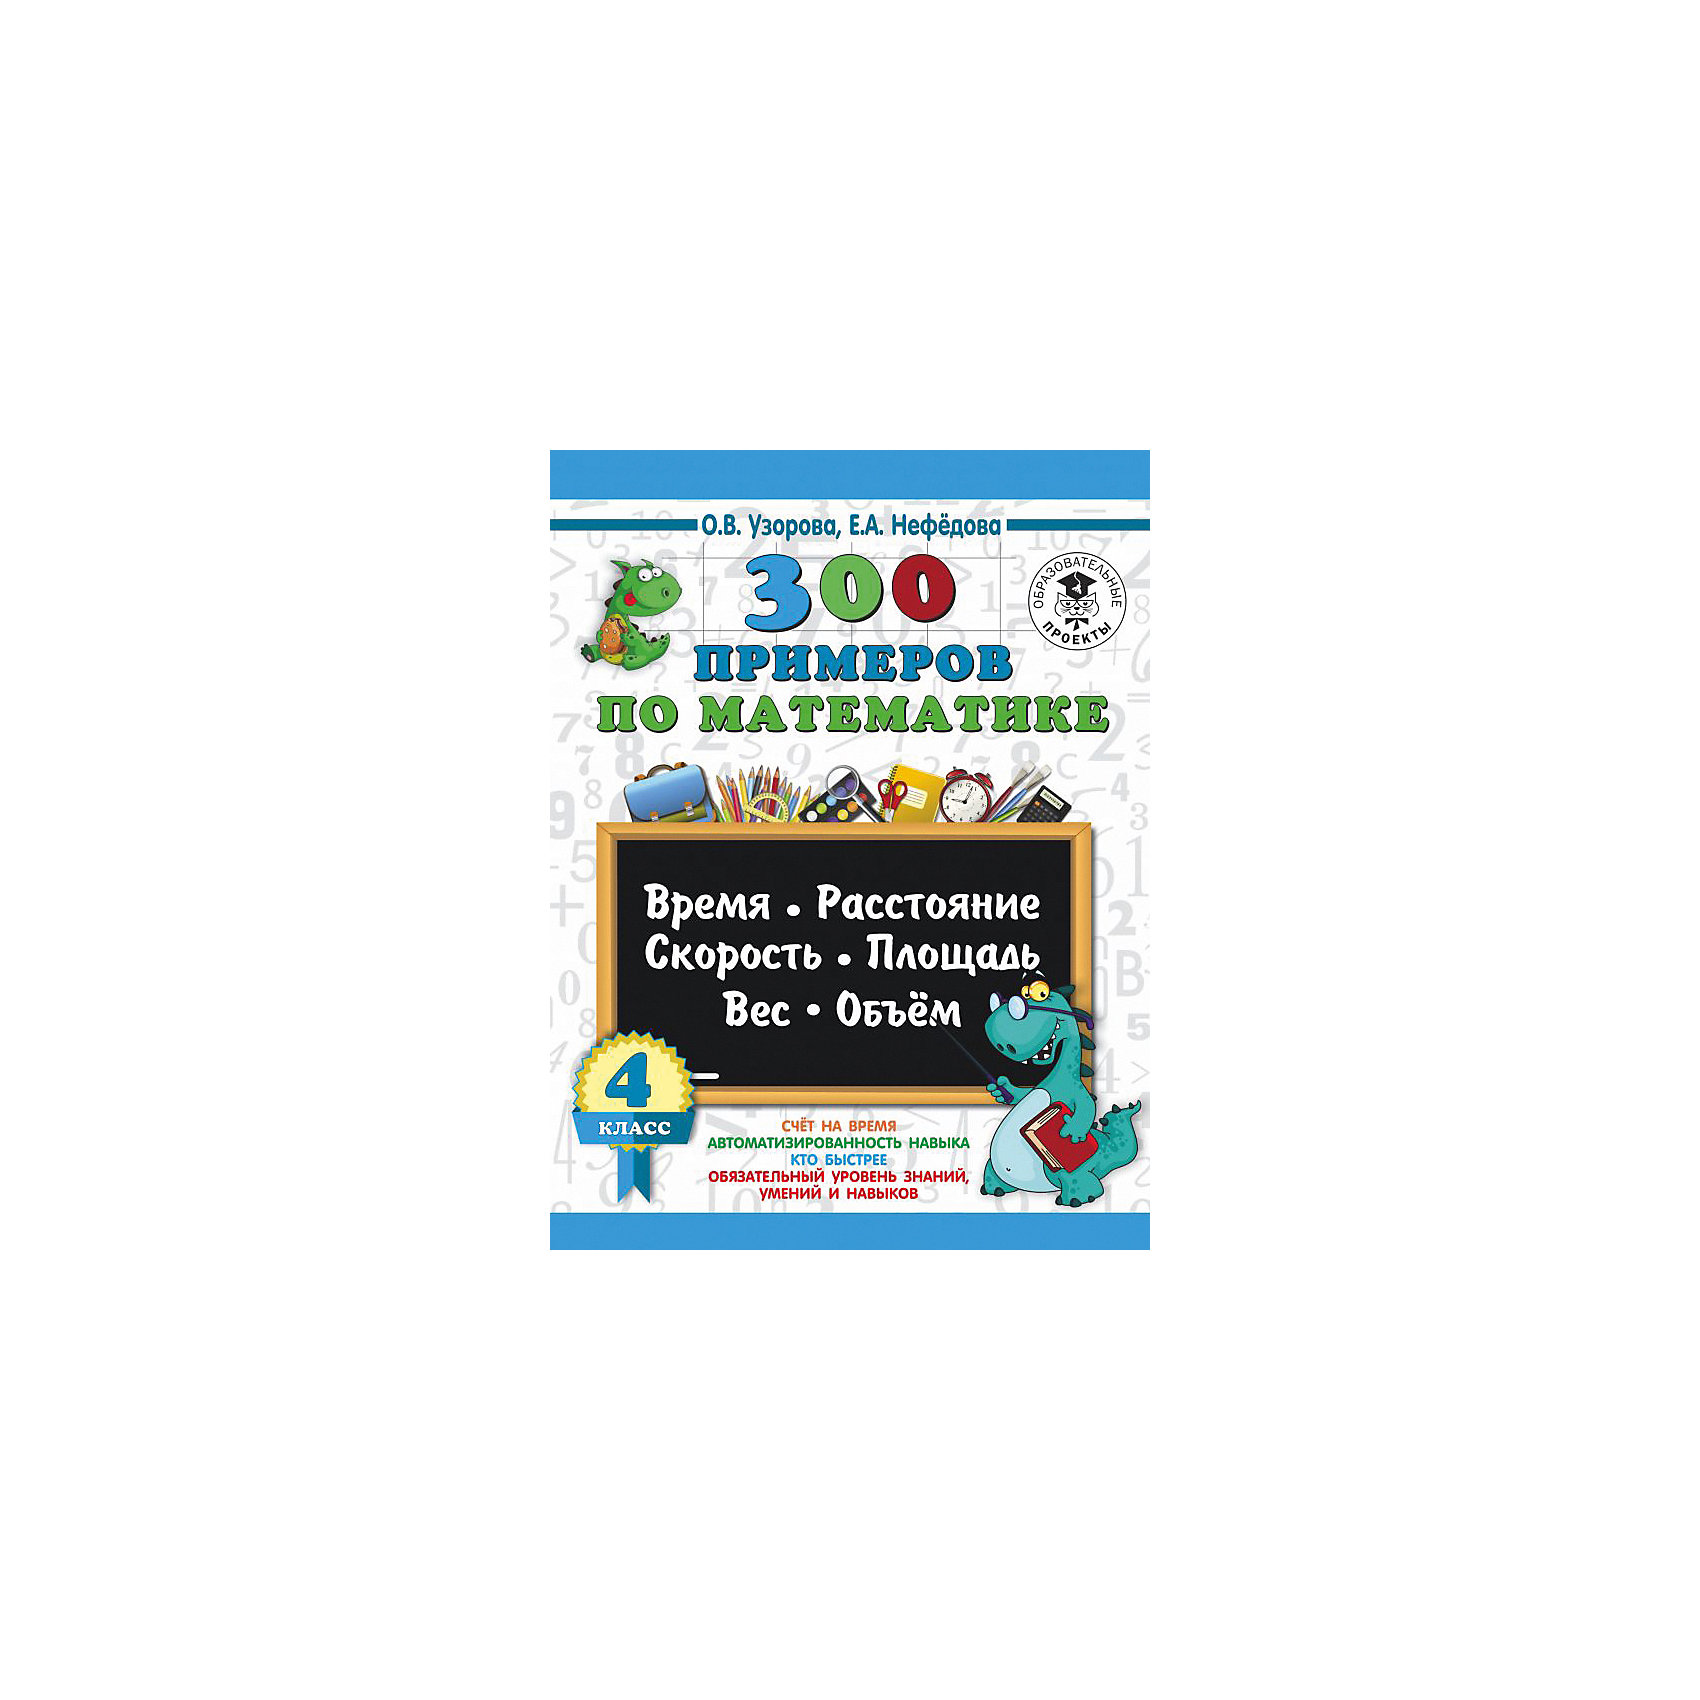 фото Развивающая книга "300 задач по математике" 3000 примеров для начальной школы, 4 класс Издательство аст